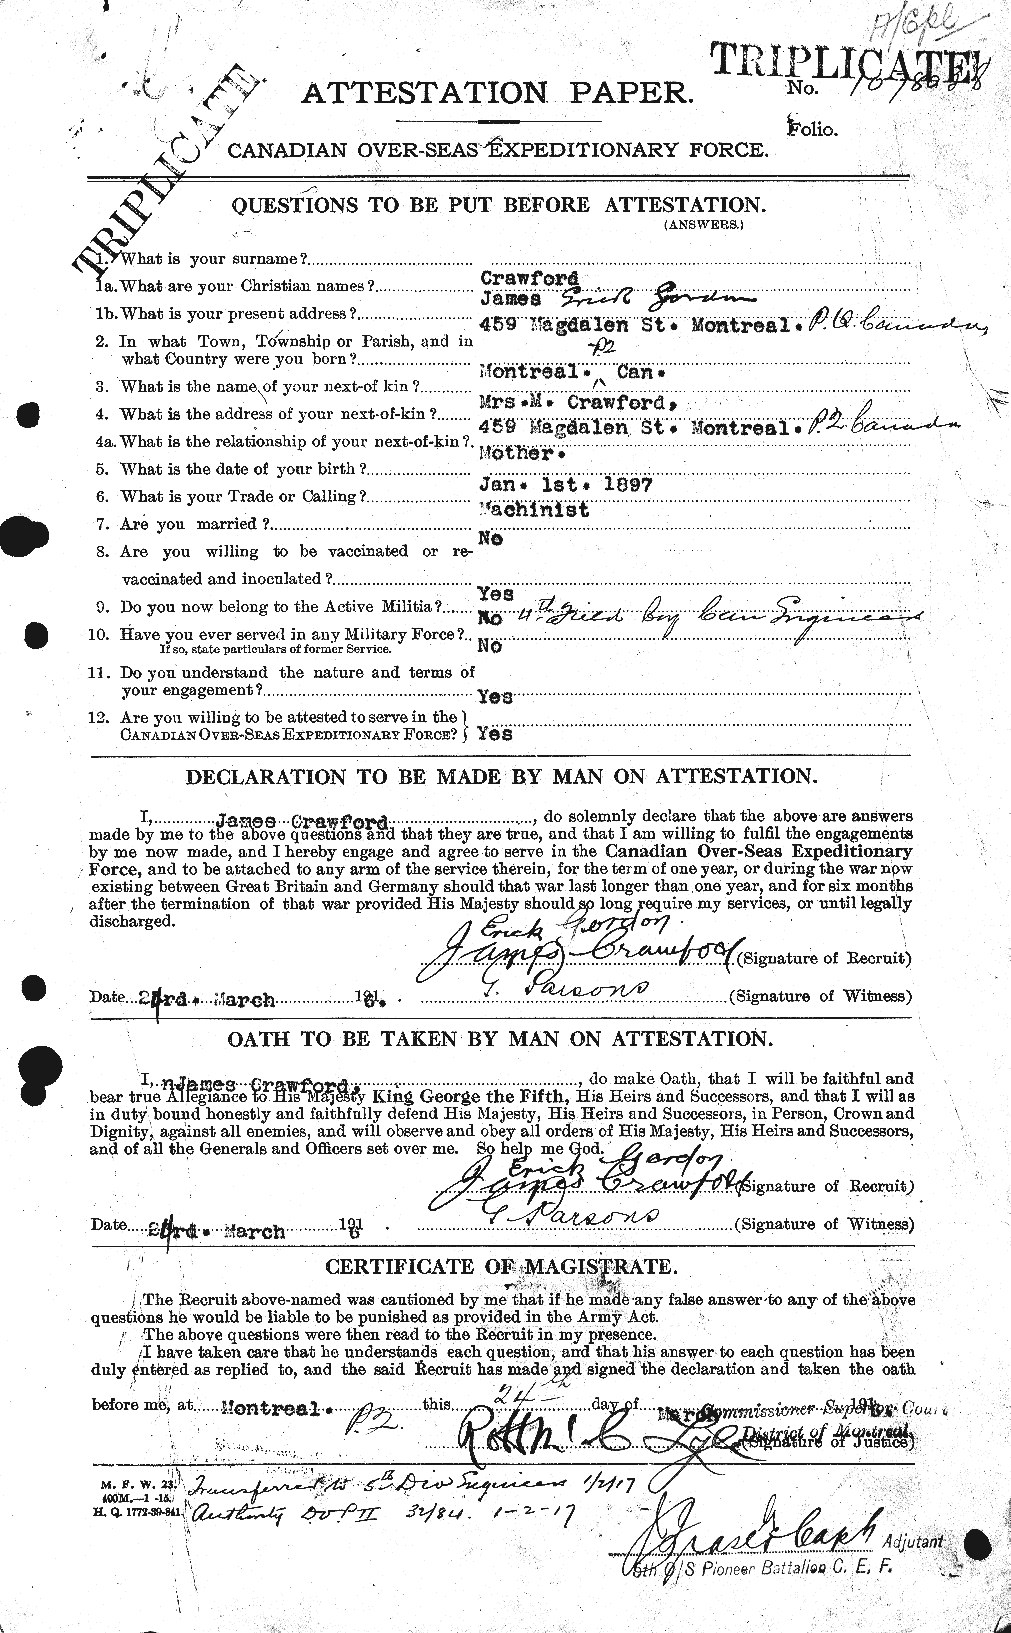 Dossiers du Personnel de la Première Guerre mondiale - CEC 062752a